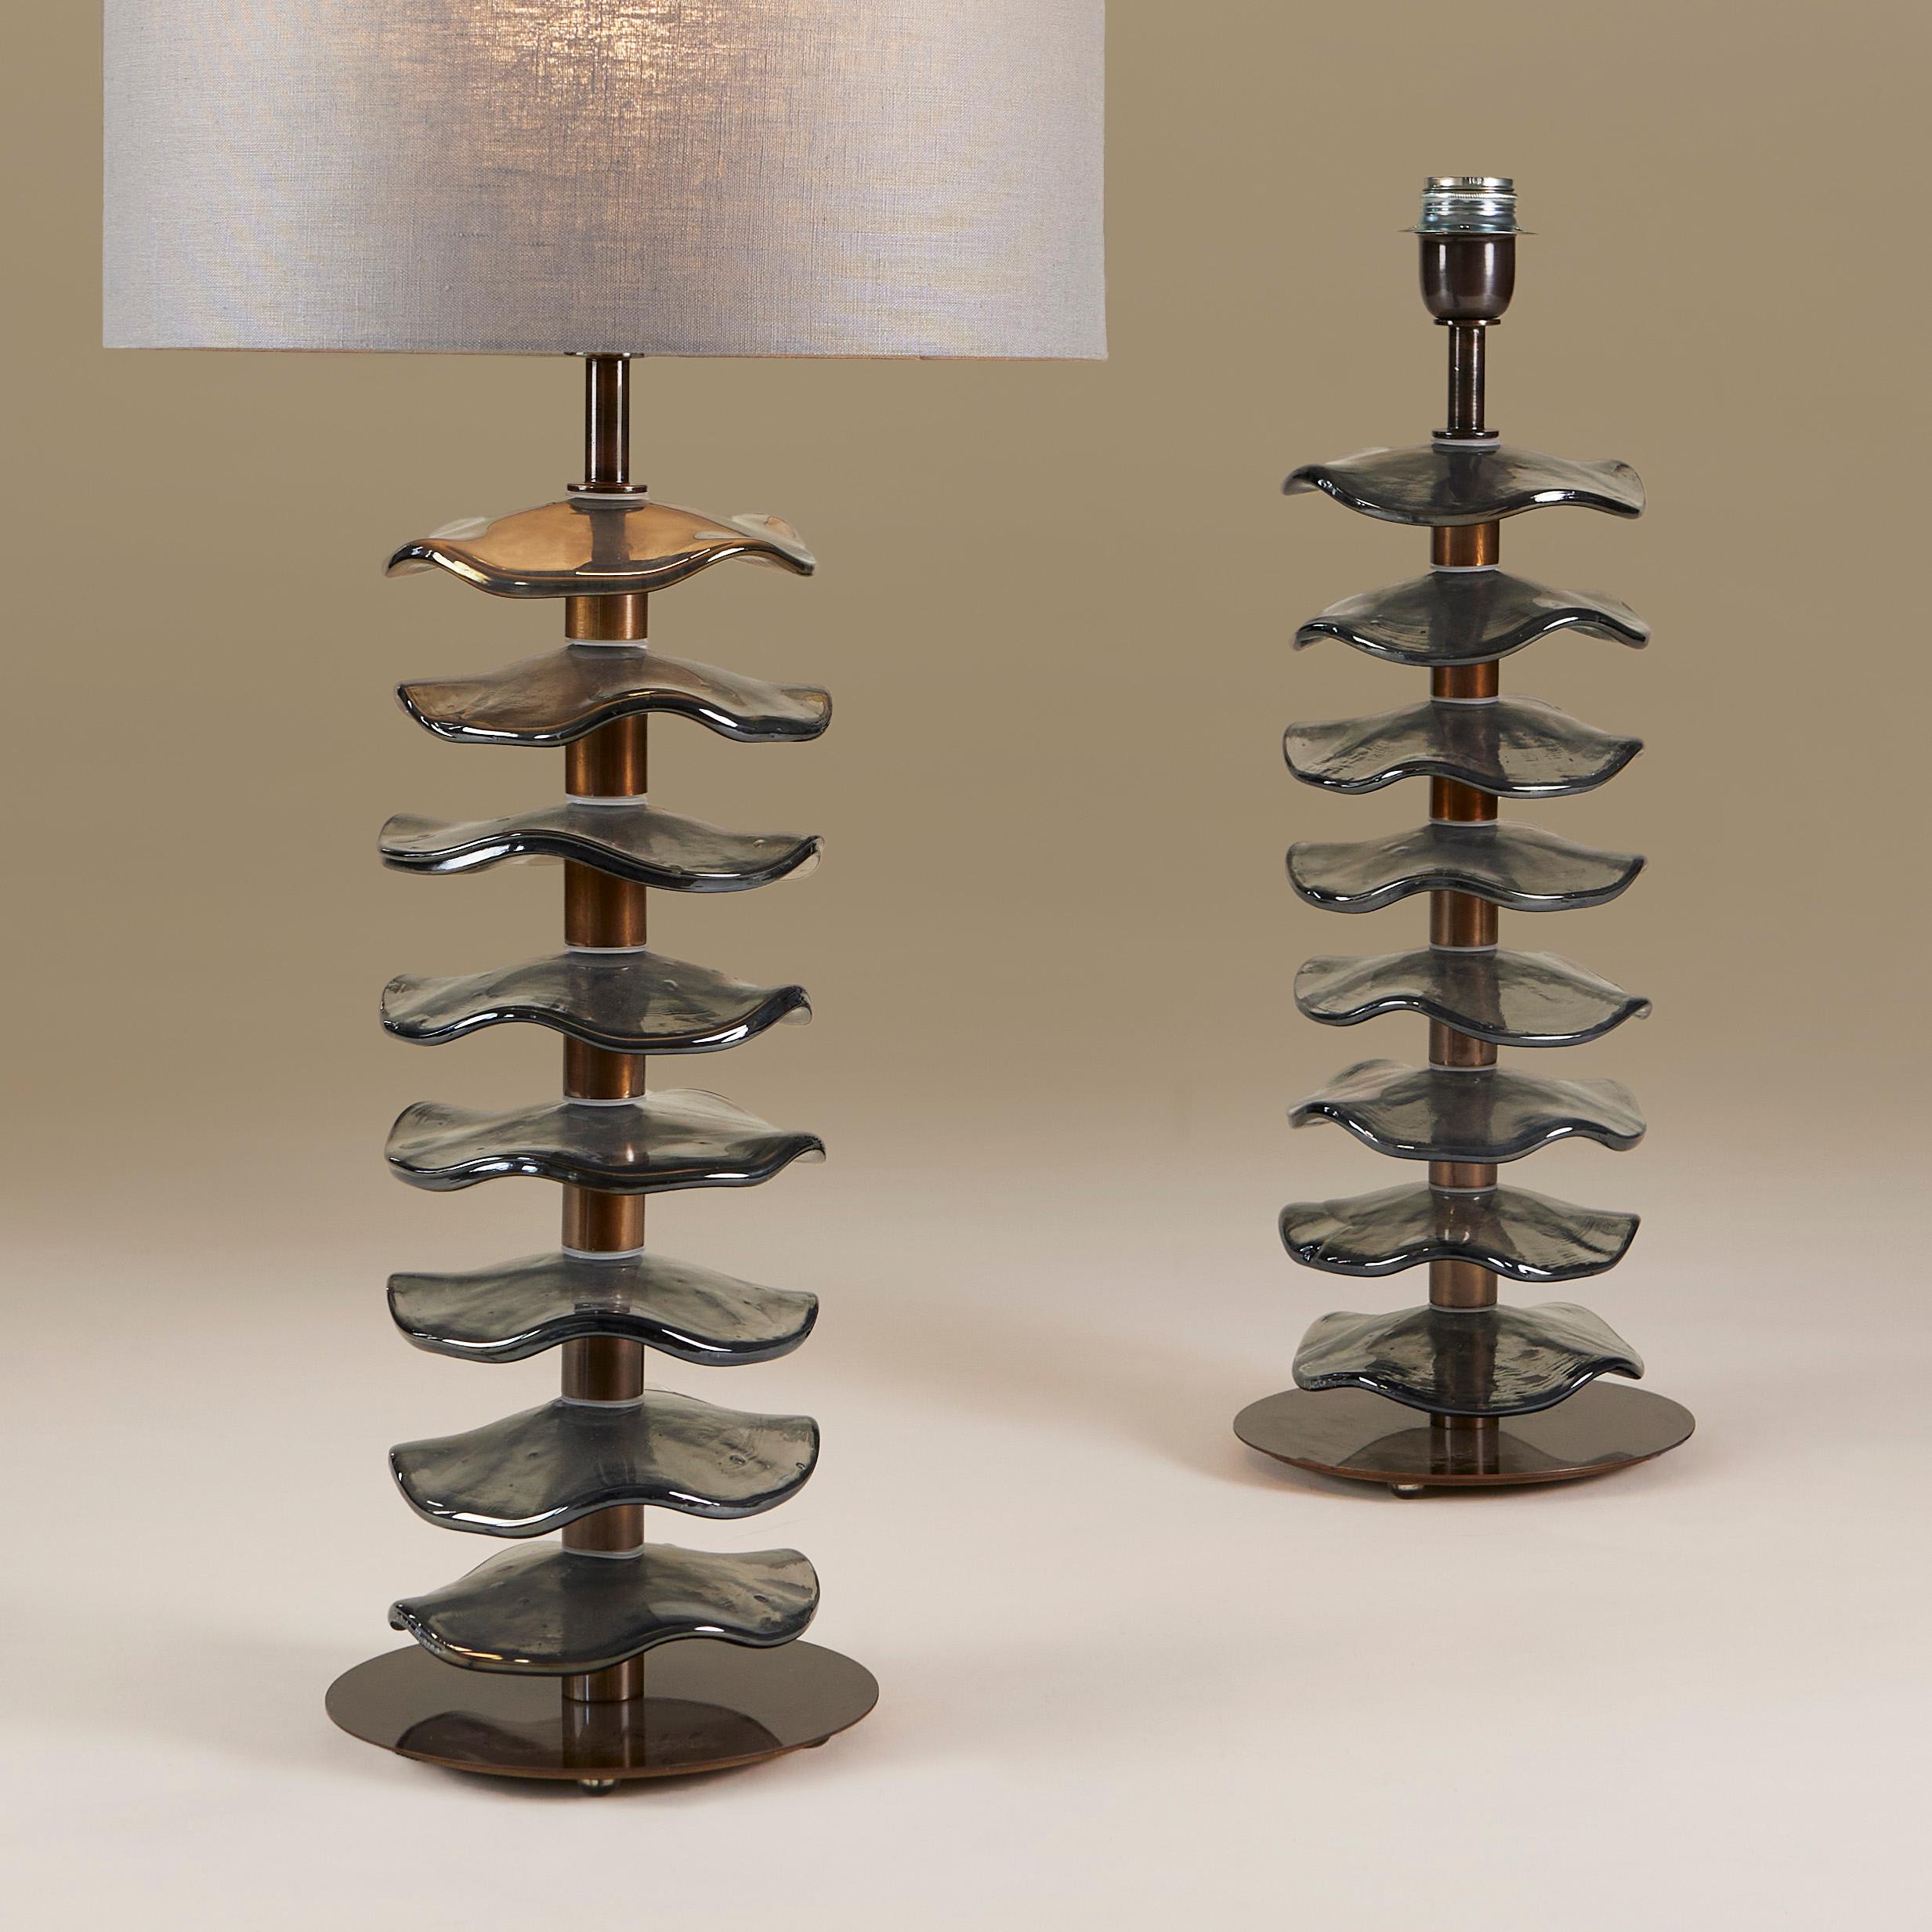 Imposantes Paar schicker Tischlampen, bestehend aus acht einzelnen, handgefertigten, hellgrauen Murano-Blütenscheiben mit dezent schillerndem Glanz. Jede sitzt auf einem Stiel aus dunklem Messing mit einem einfachen runden Messingfuß.

Lampenschirme